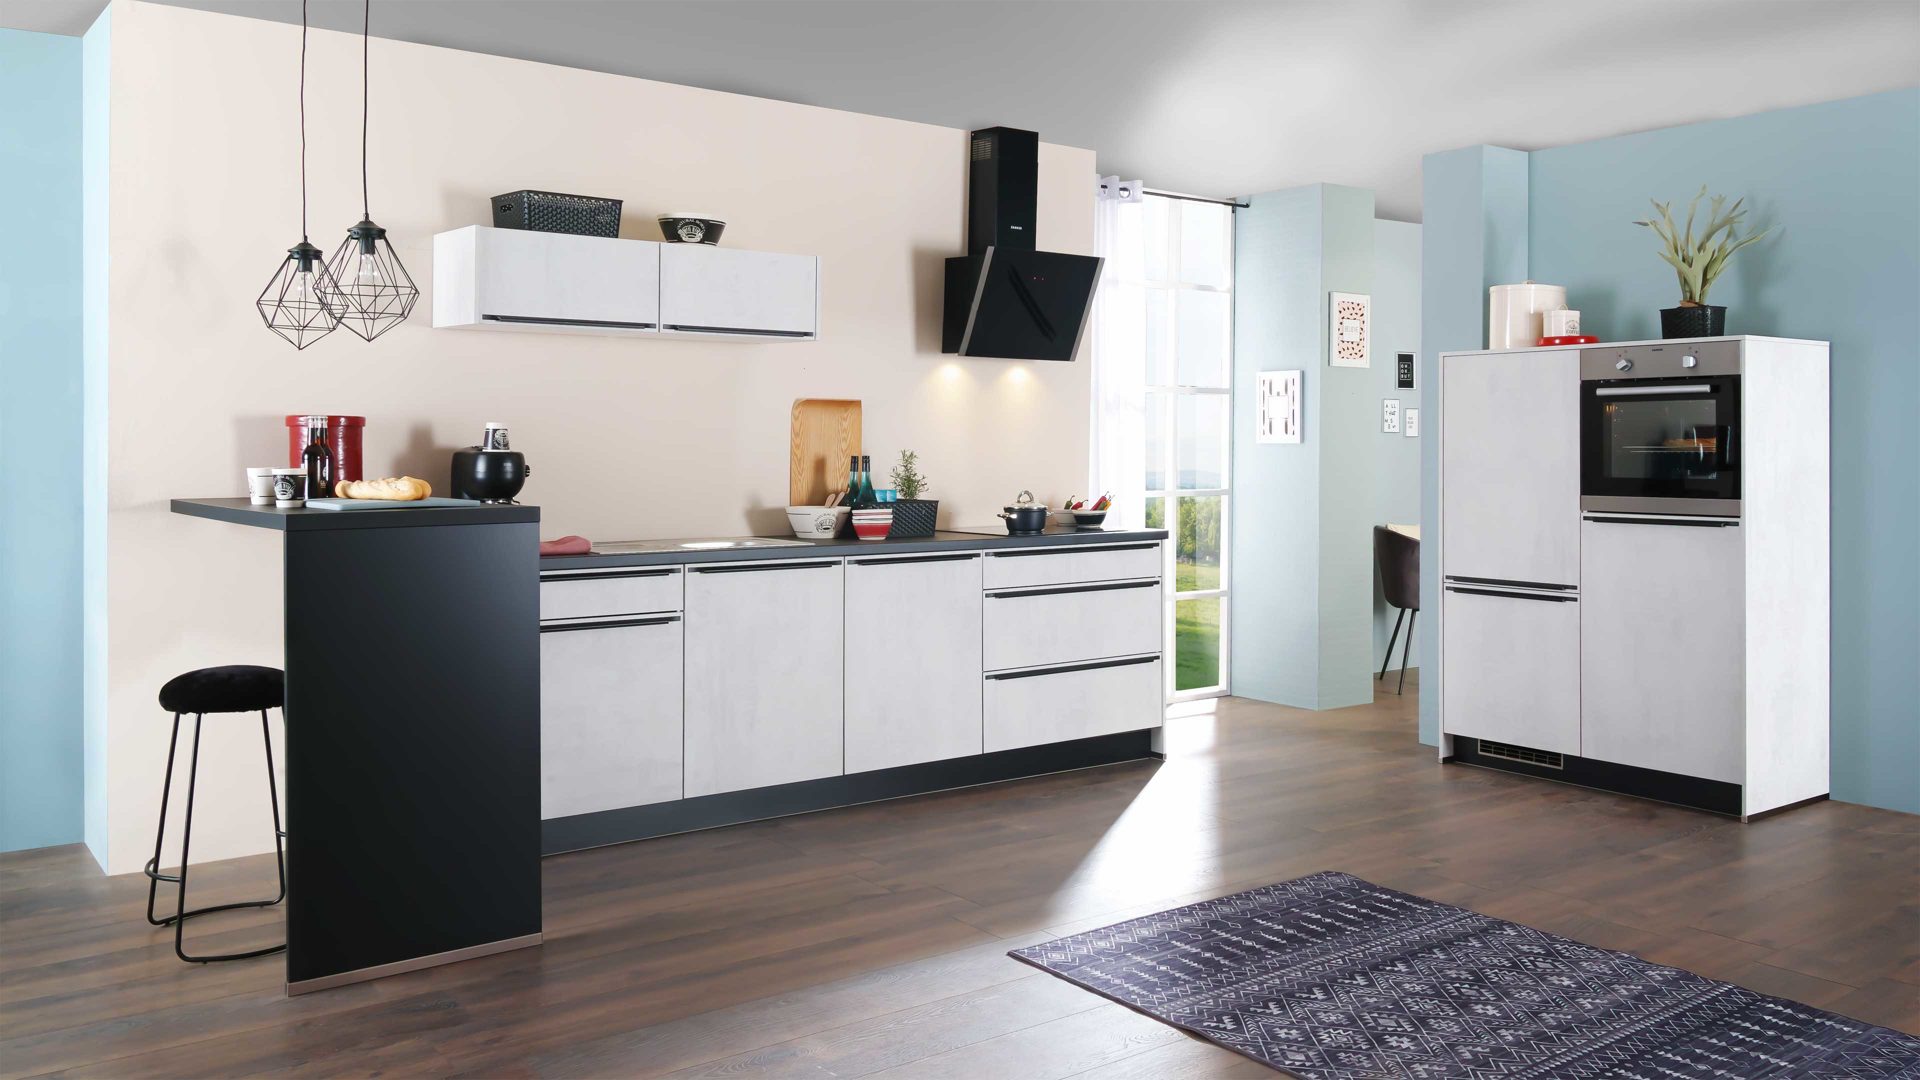 Einbauküche Express küchen aus Holz in Weiß EXPRESS KÜCHEN Einbauküche Base mit Geräten Beton steinweiß & Schwarz - dreizeilig